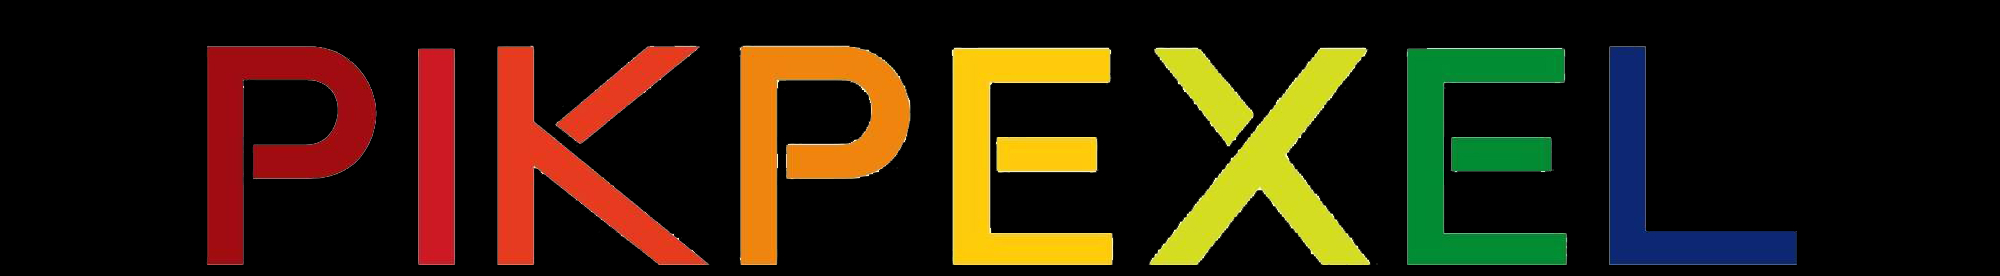 pik pexel's profile banner